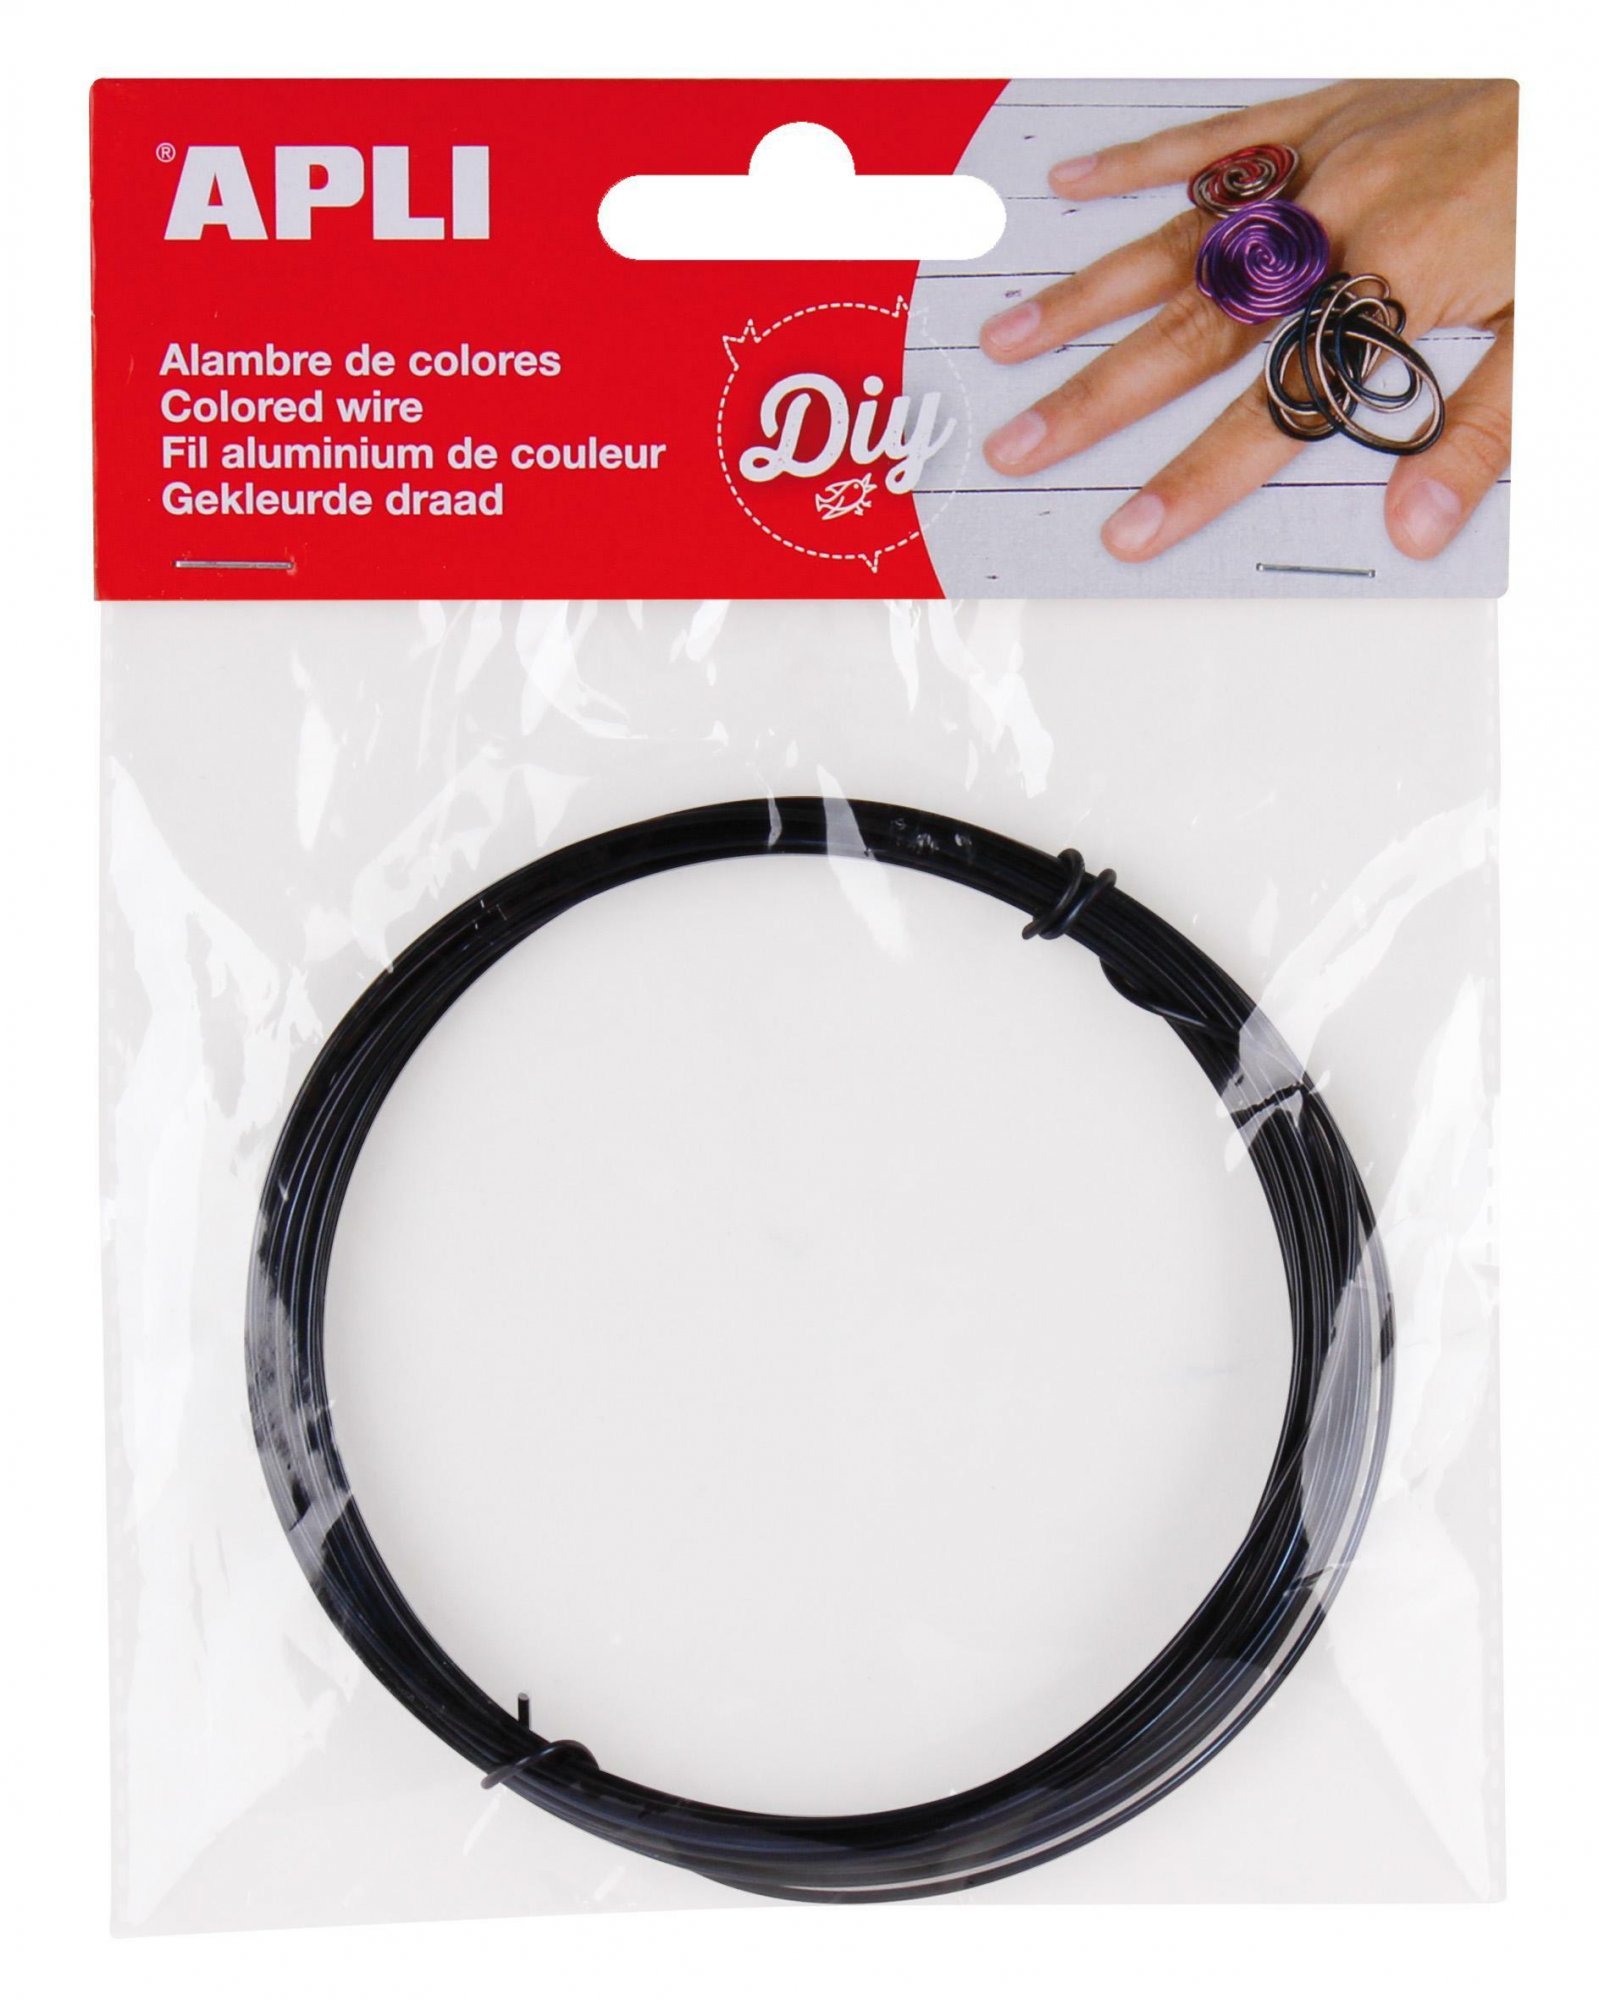 APLI modelovací drát, 1,5 mm x 5 m, černý